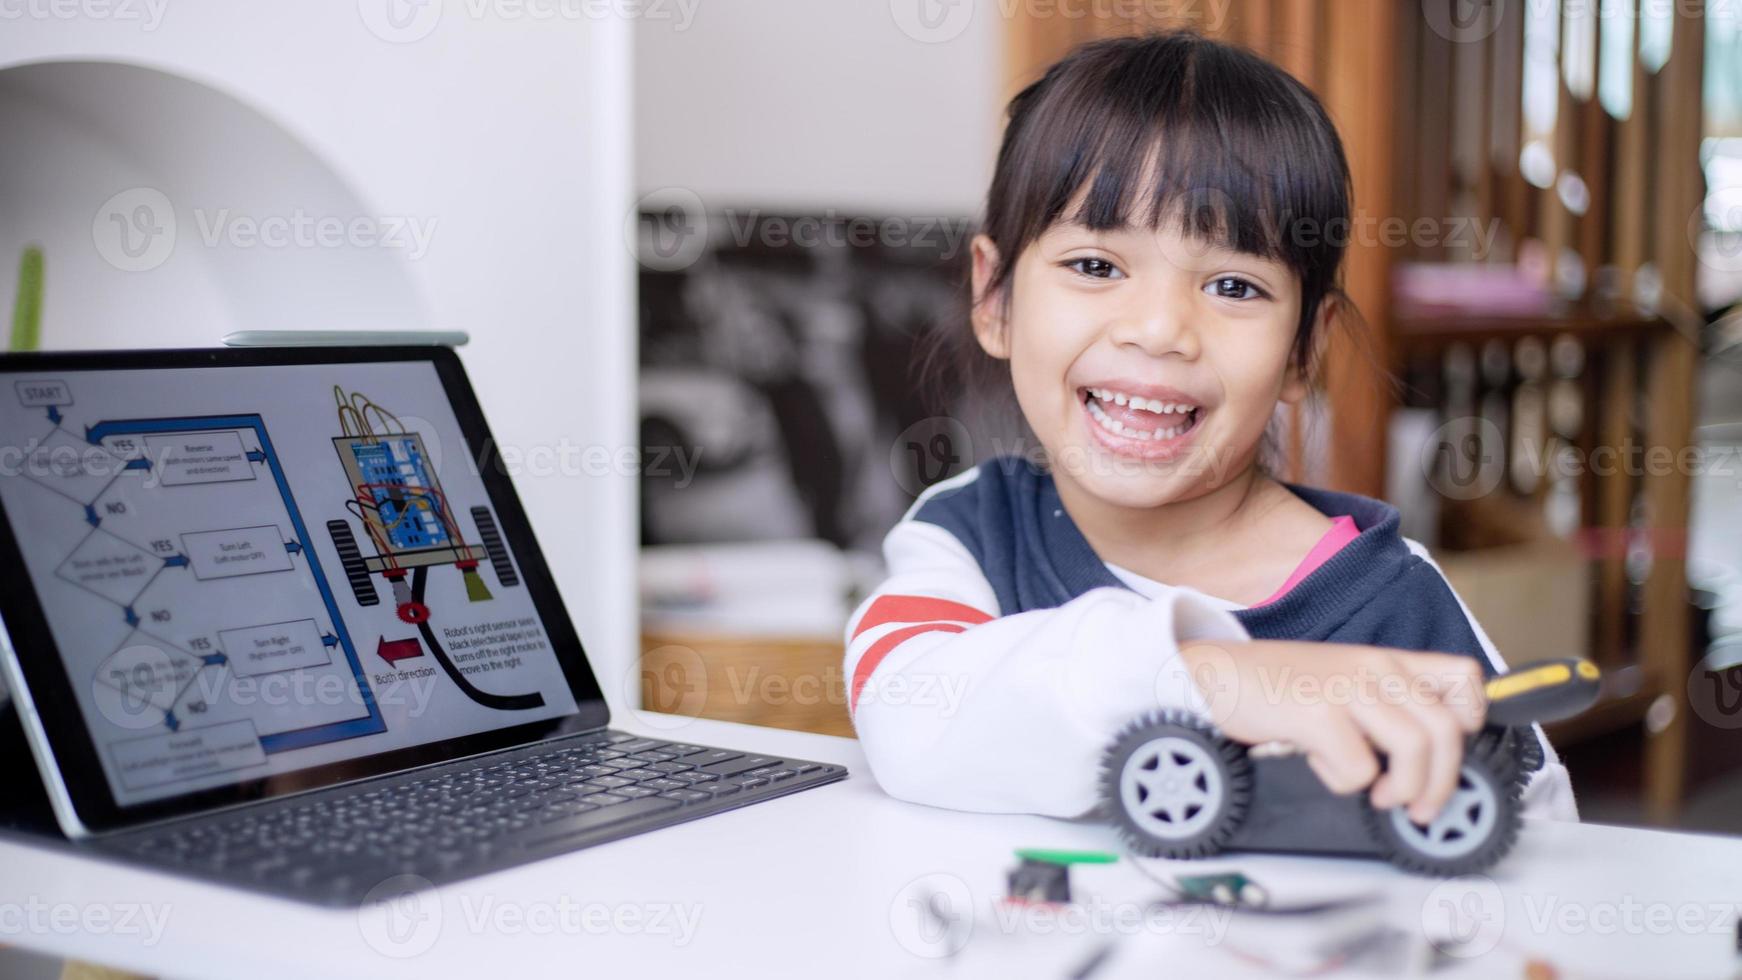 Asien studenter lära sig på Hem i kodning robot bilar och elektronisk styrelse kablar i stam, ånga, matematik teknik vetenskap teknologi dator koda i robotik för barn begrepp foto